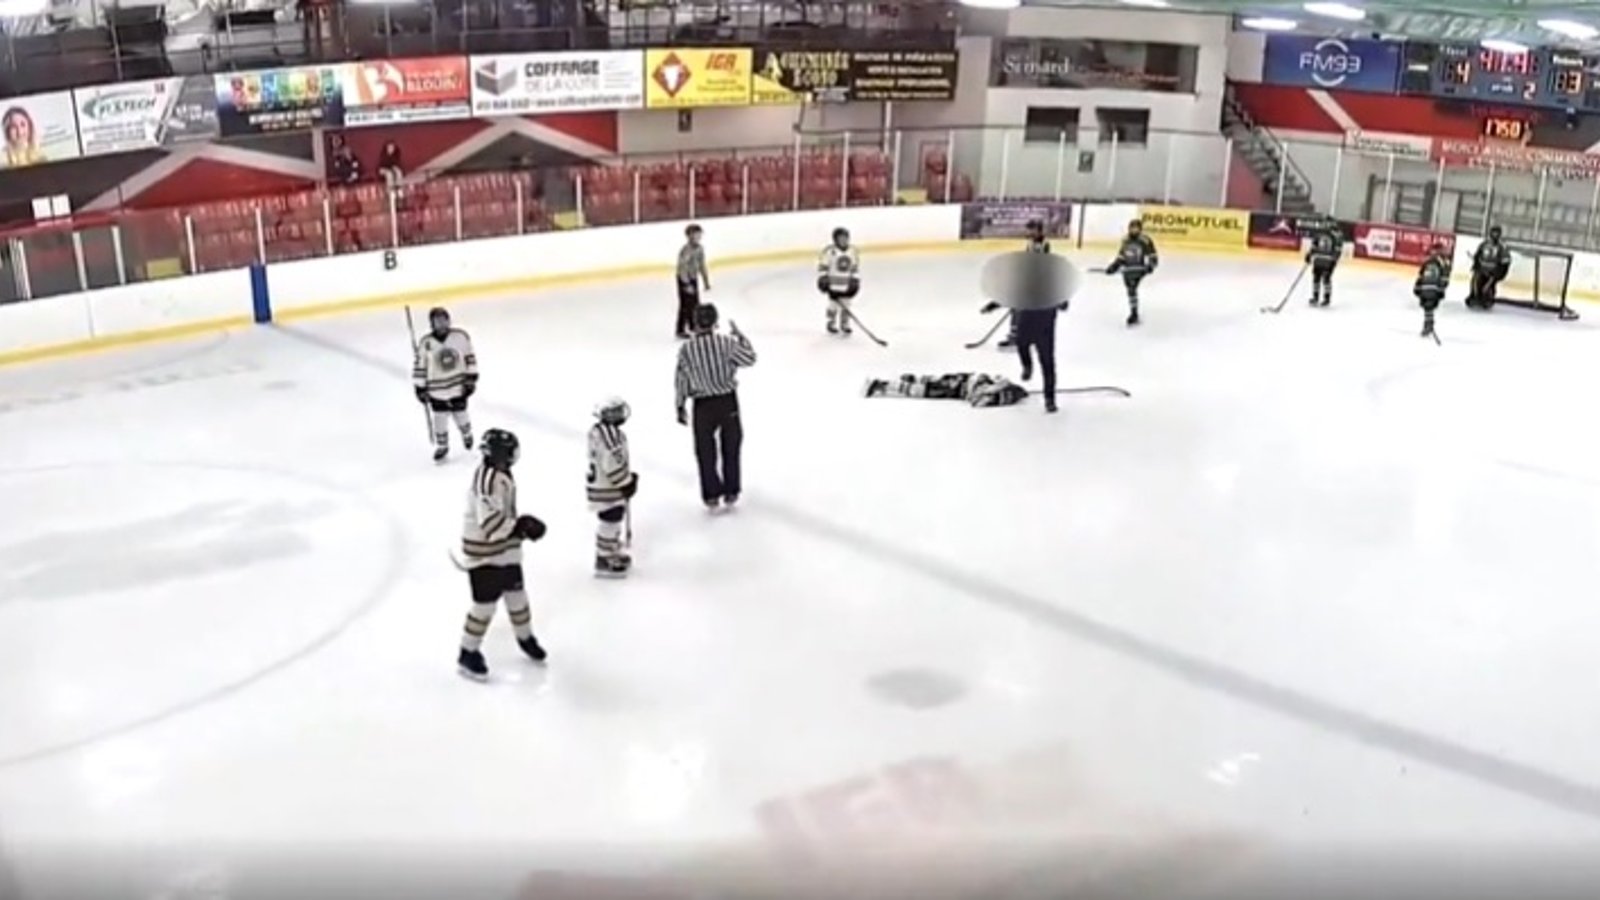 HOCKEY MINEUR: Un entraîneur saute sur la glace pour s'en prendre à un joueur!